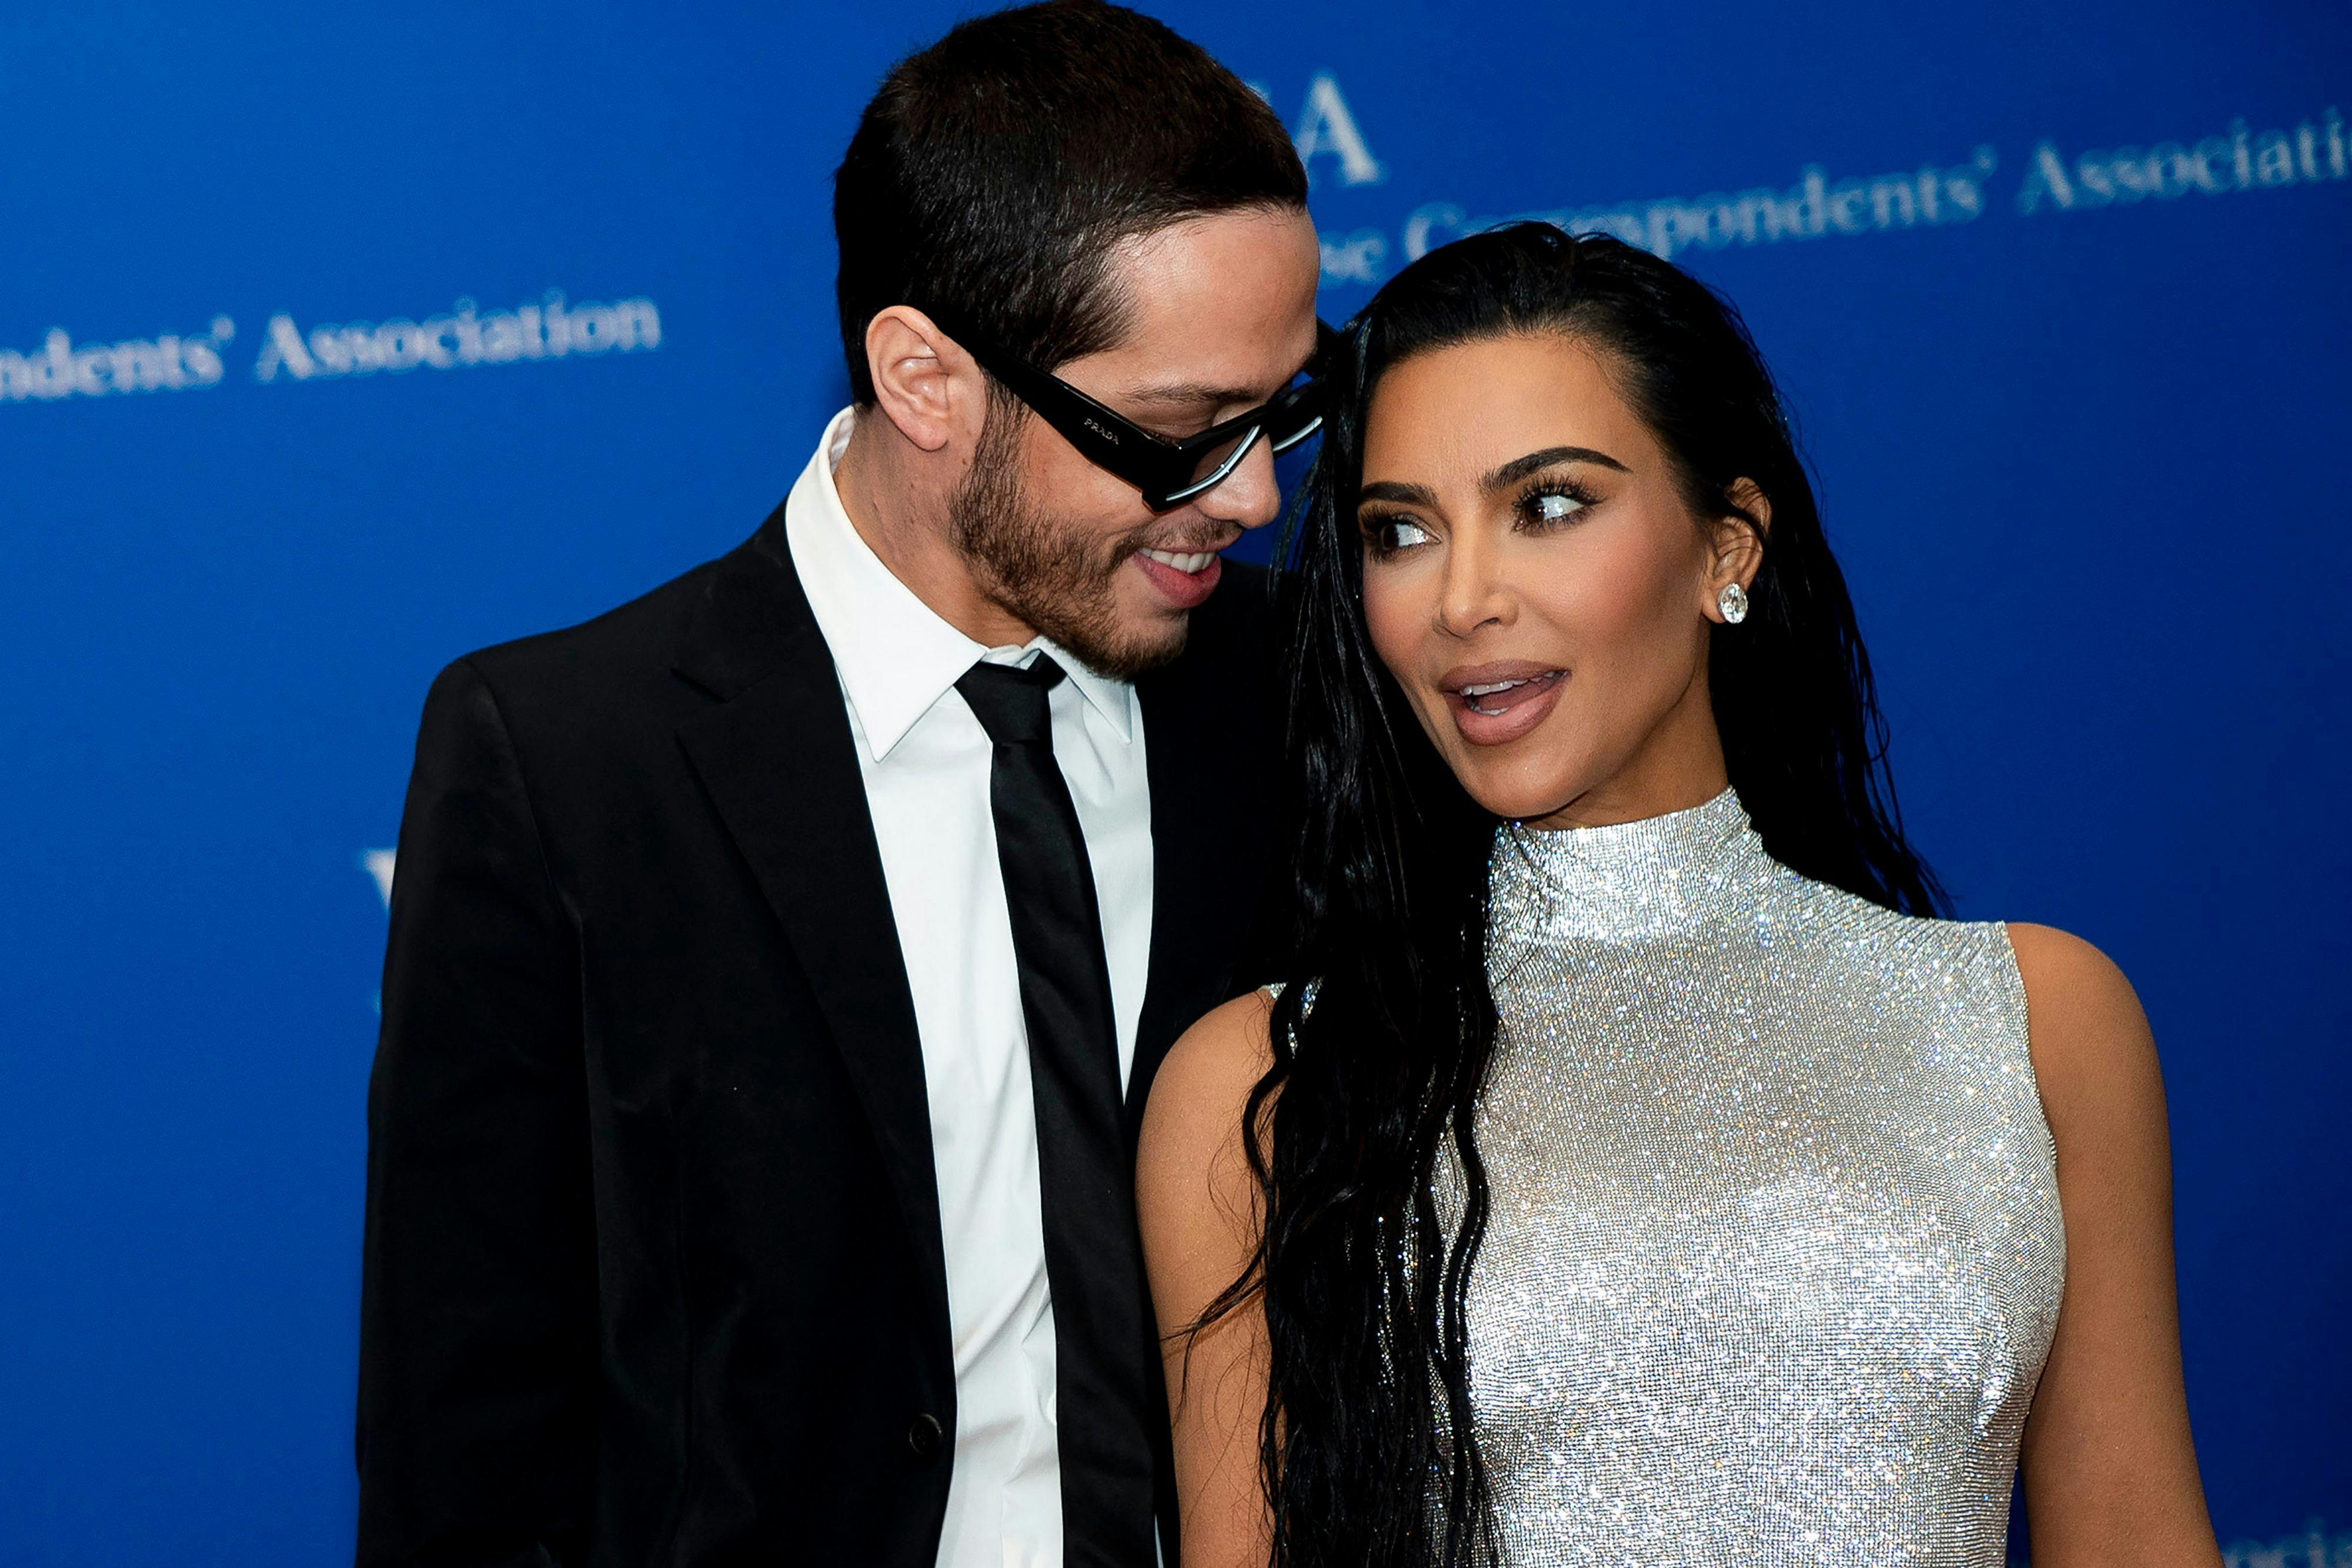 Kim Kardashian fik slæbt Pete Davidson med til en masse vilde arrangementer. Blandt andet dukkede de op sammen til den årlige kendismiddag i Det Hvide Hus i Washington, USA.
